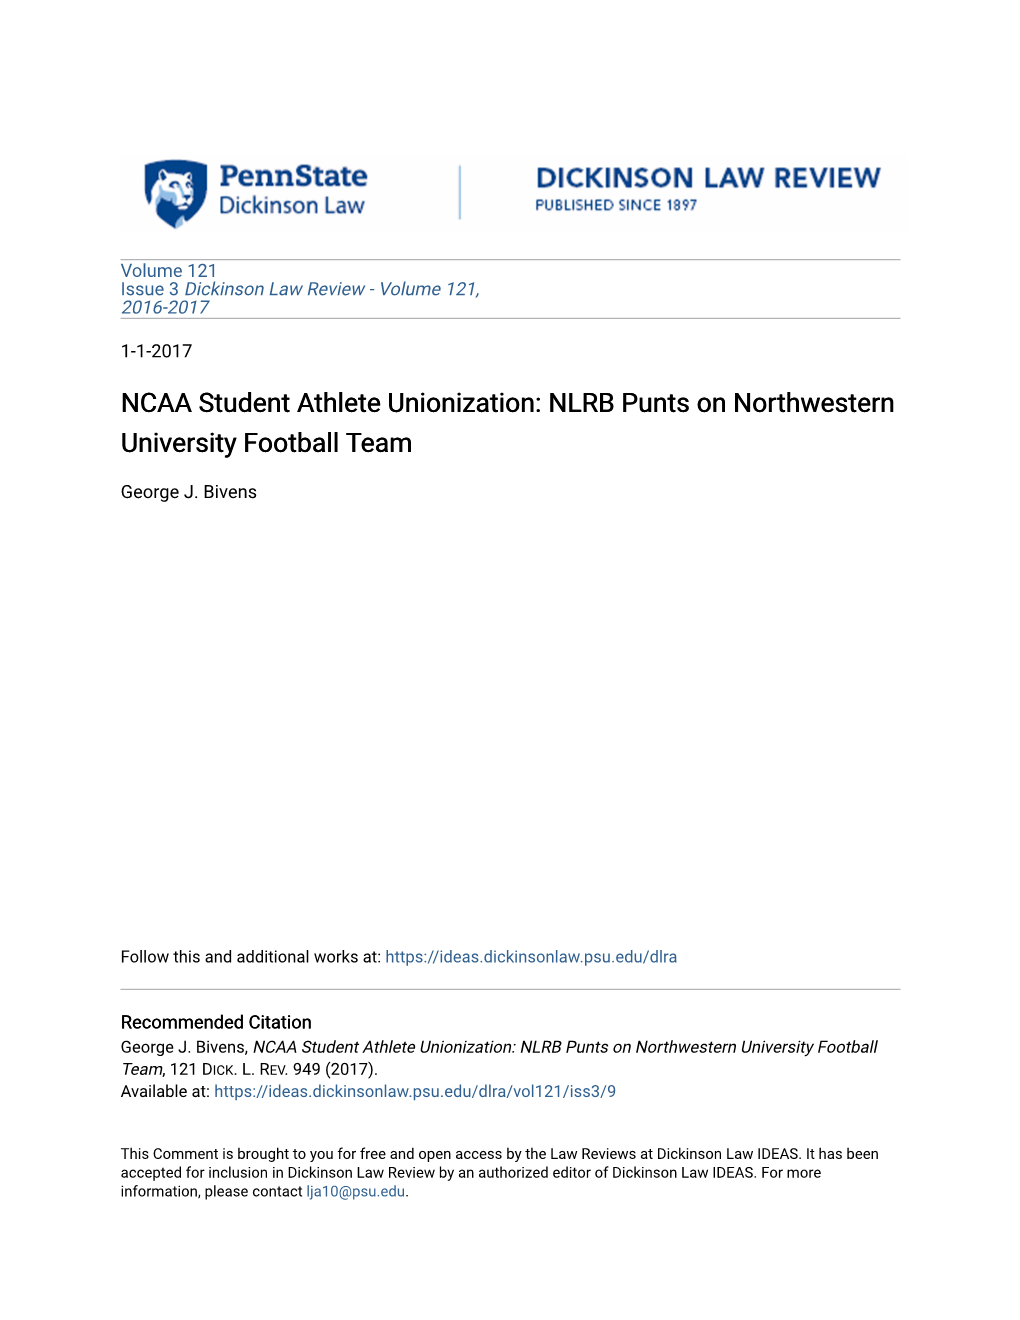 NCAA Student Athlete Unionization: NLRB Punts on Northwestern University Football Team